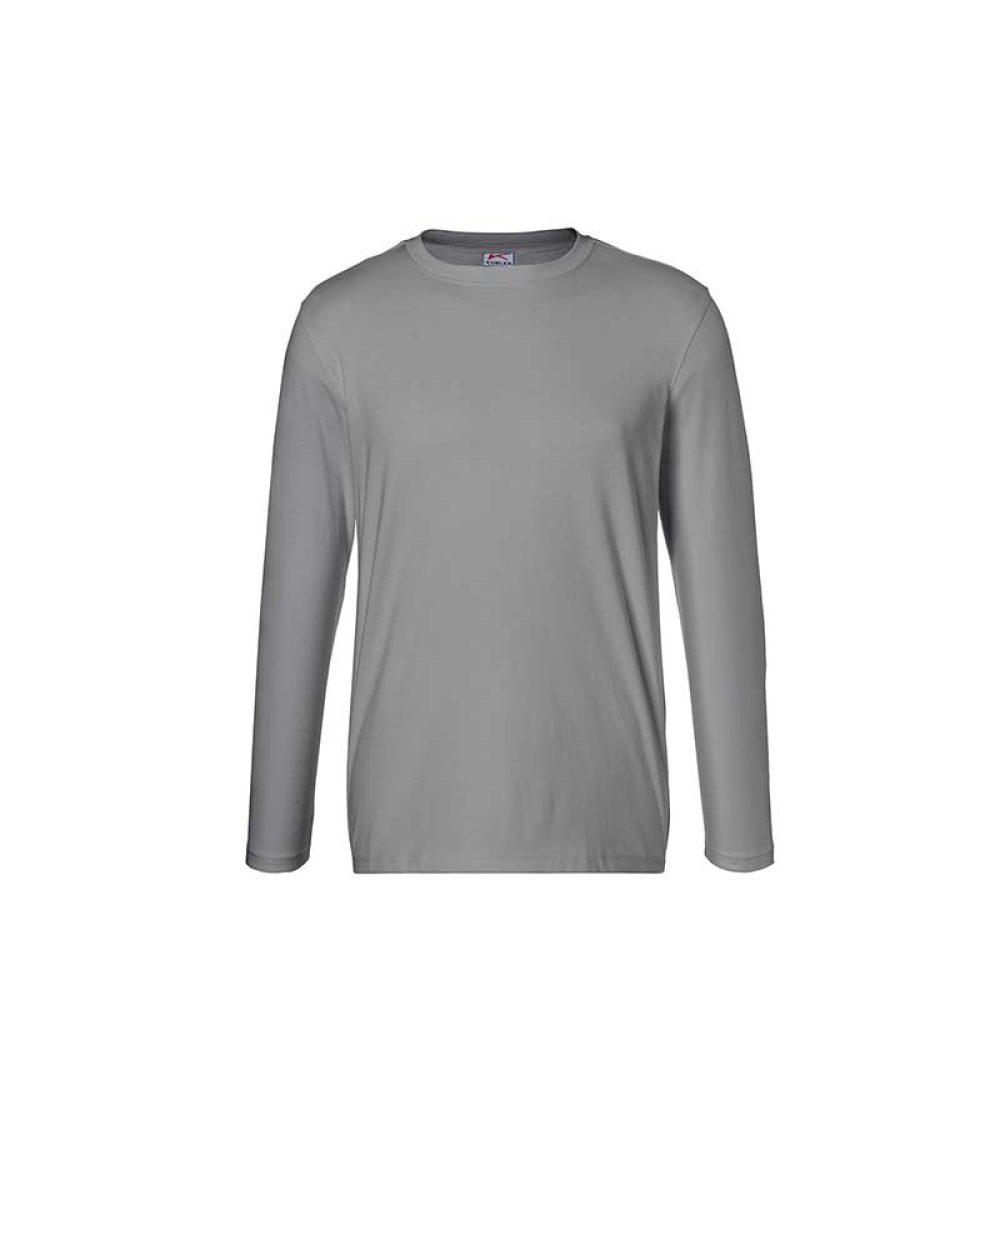 kuebler-langarm-t-shirt-shirts-5025-6240-95